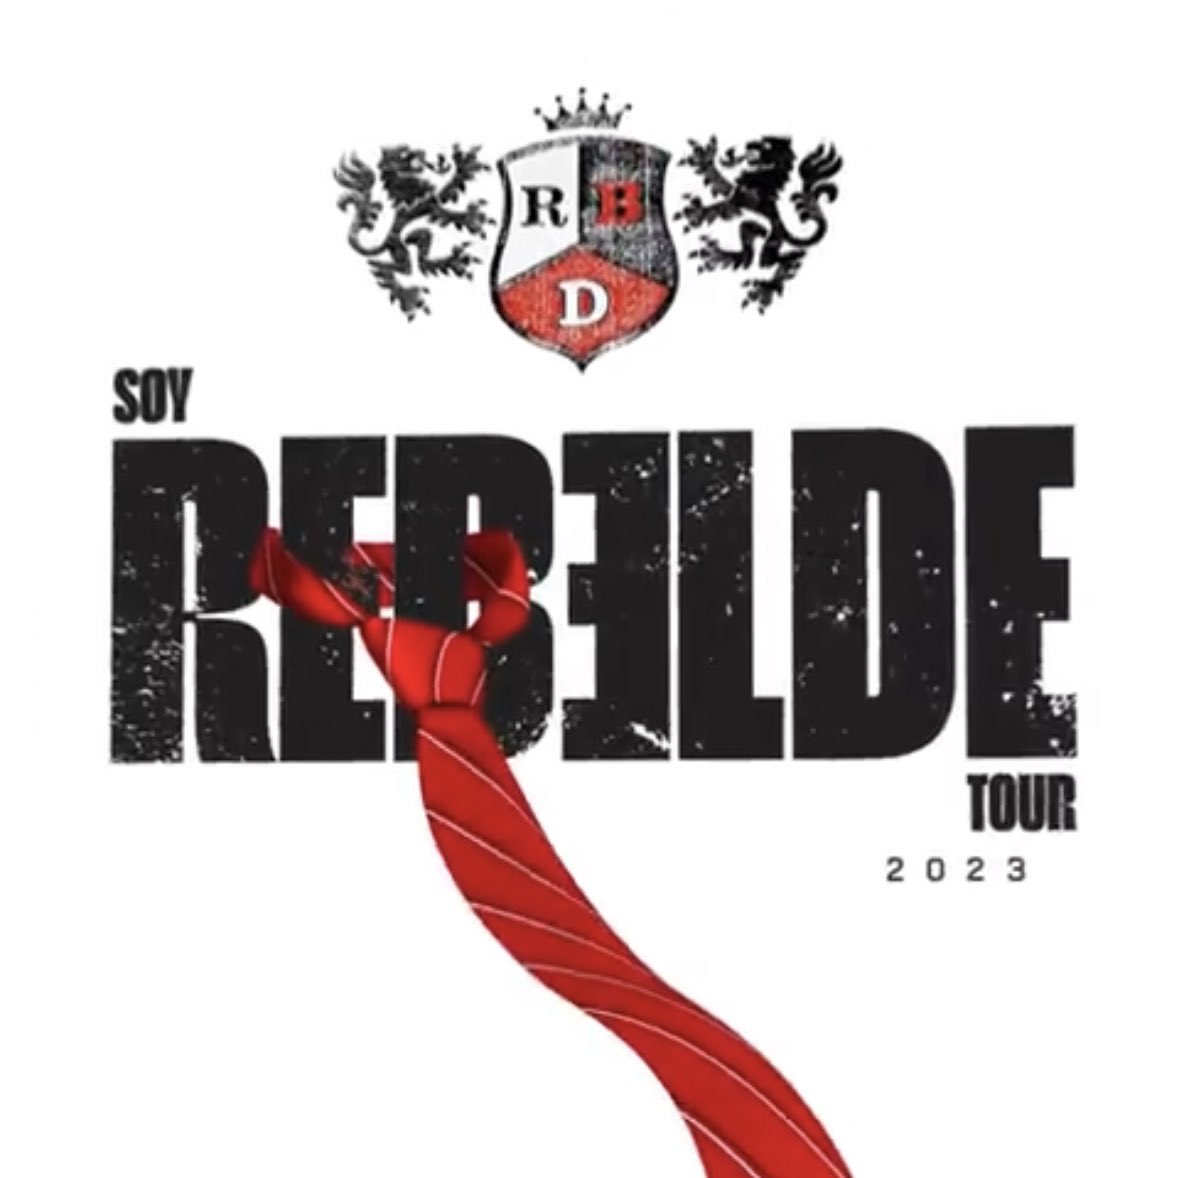 Soy Rebelde World tour by RBD